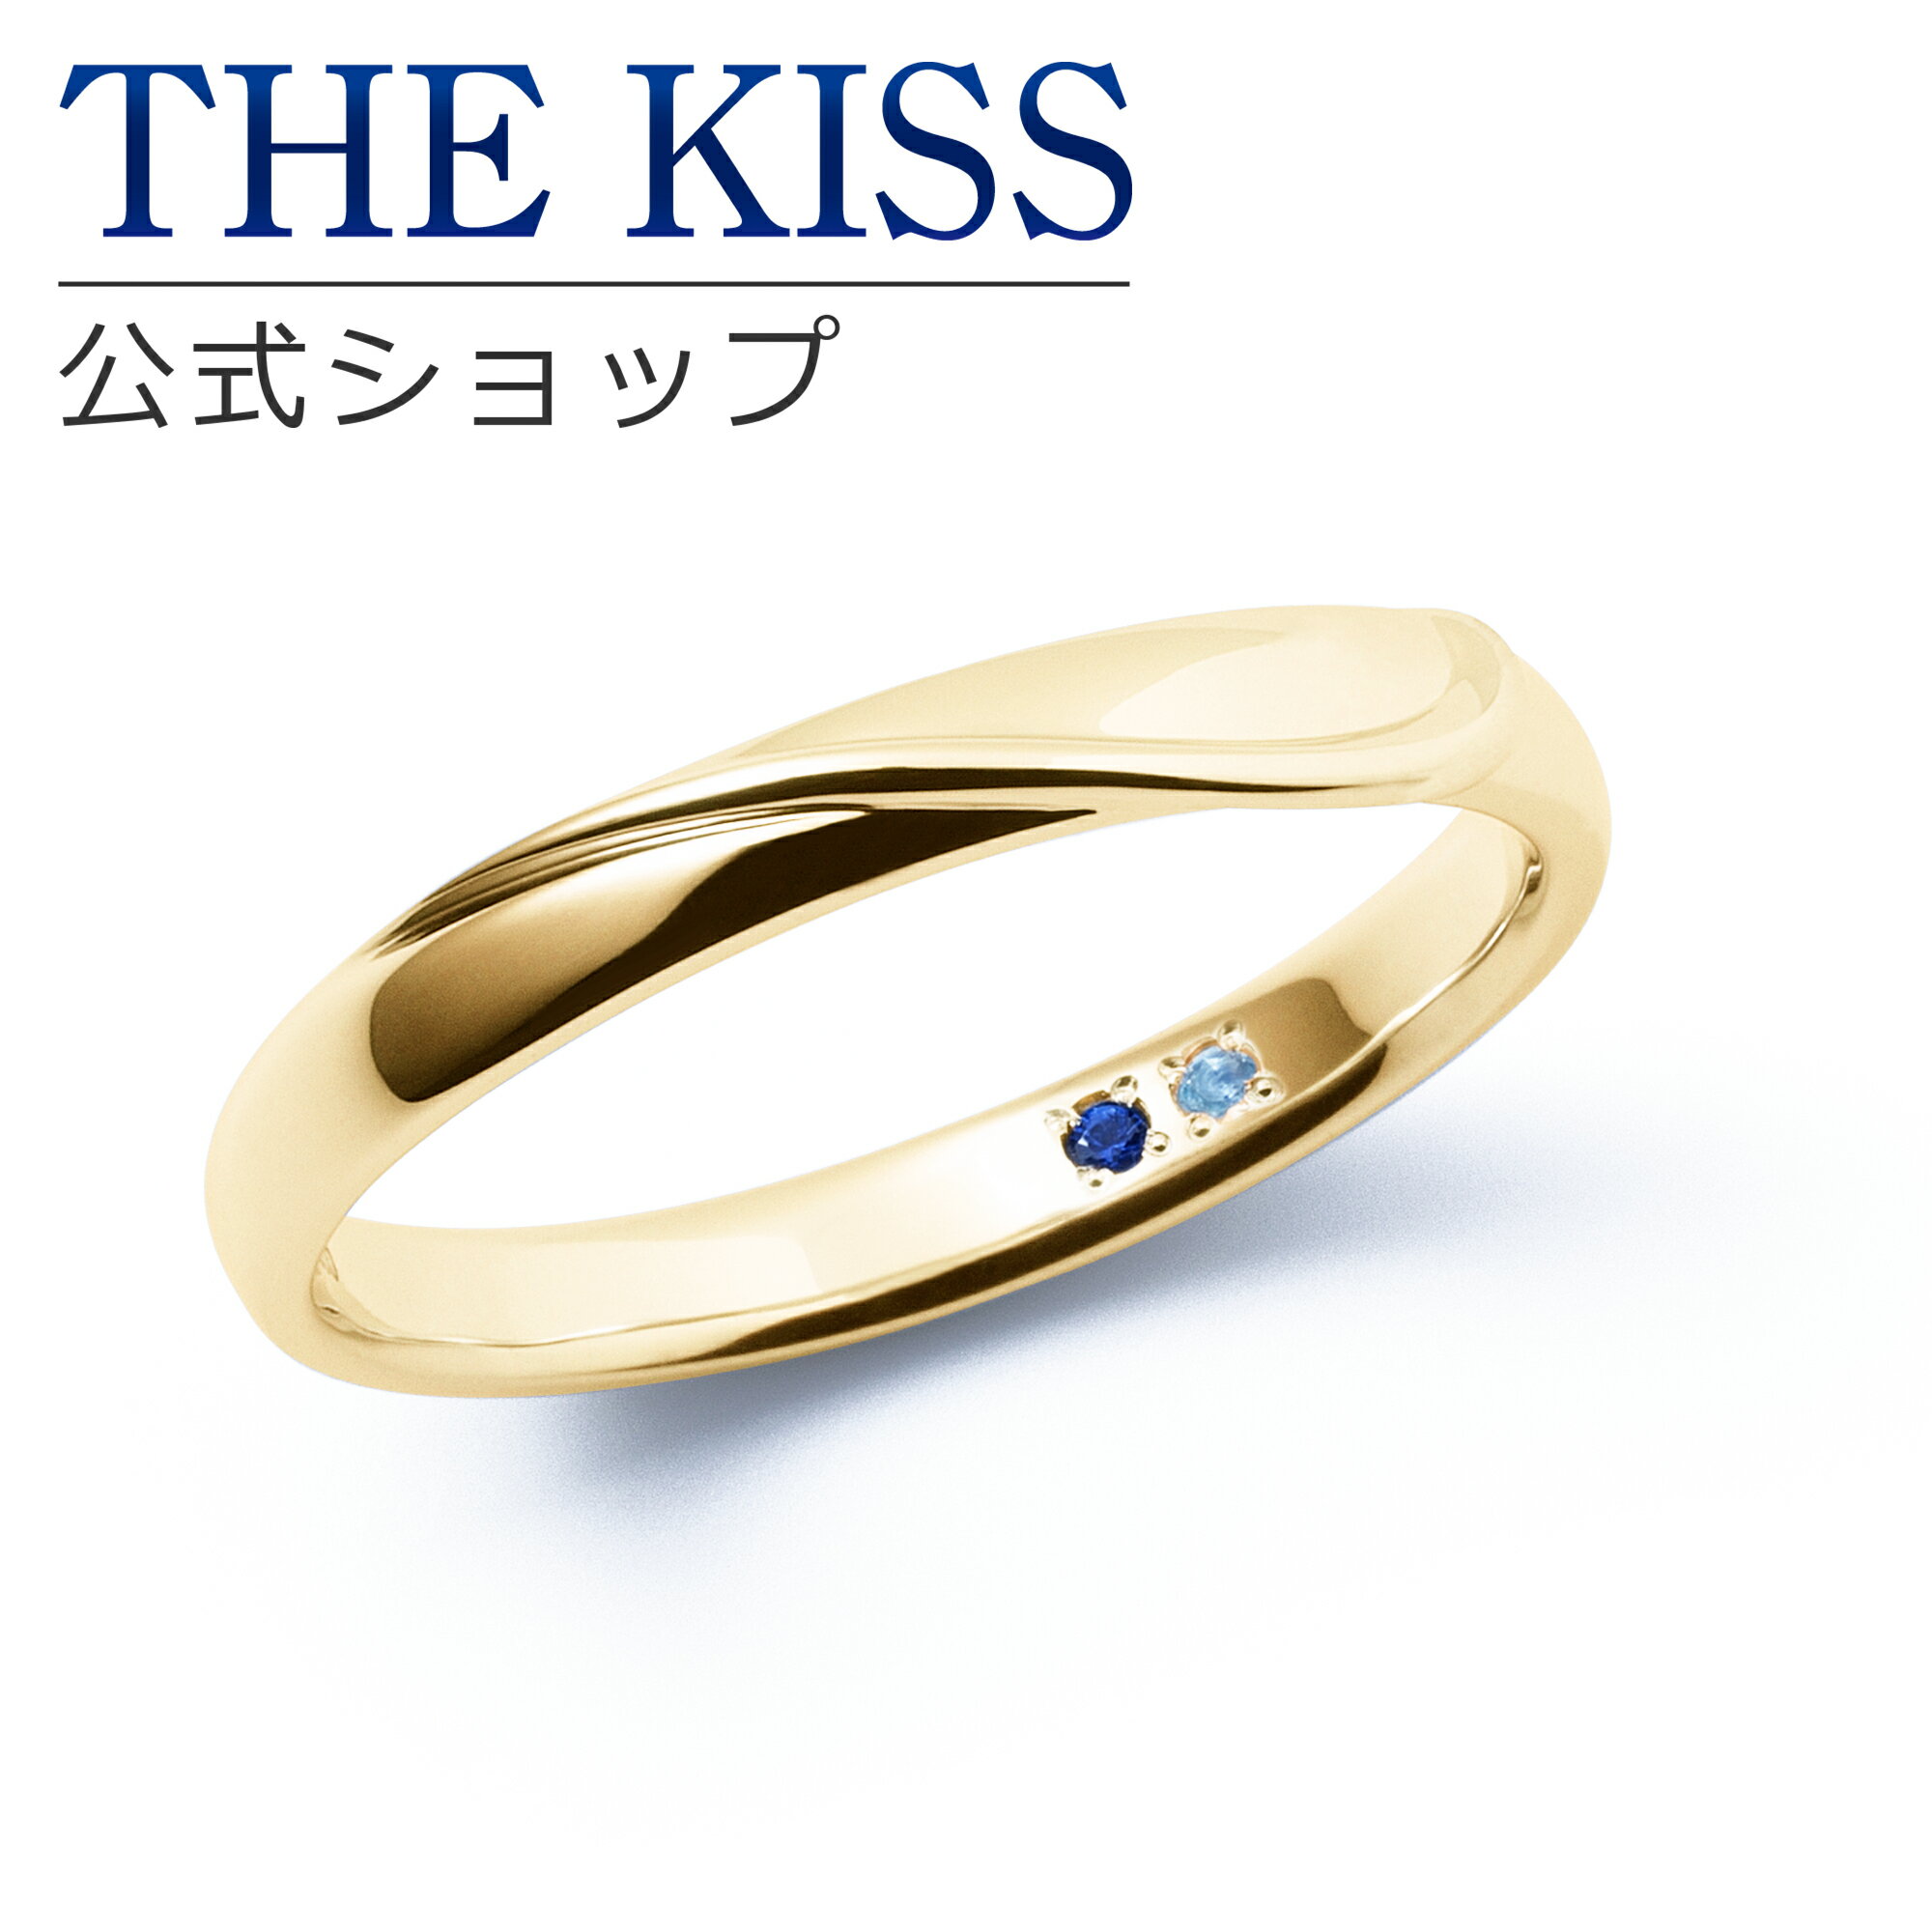 【ラッピング無料】【刻印無料】【THE KISS Anniversary】 THE KISS 公式ショップ K10 イエローゴールド マリッジ リング 結婚指輪 ペアリング メンズ 単品 yg カップル 人気 ジュエリーブランド THEKISS ザキッス 指輪 7581122012A 誕生石 シンプル 女性 ブライダル